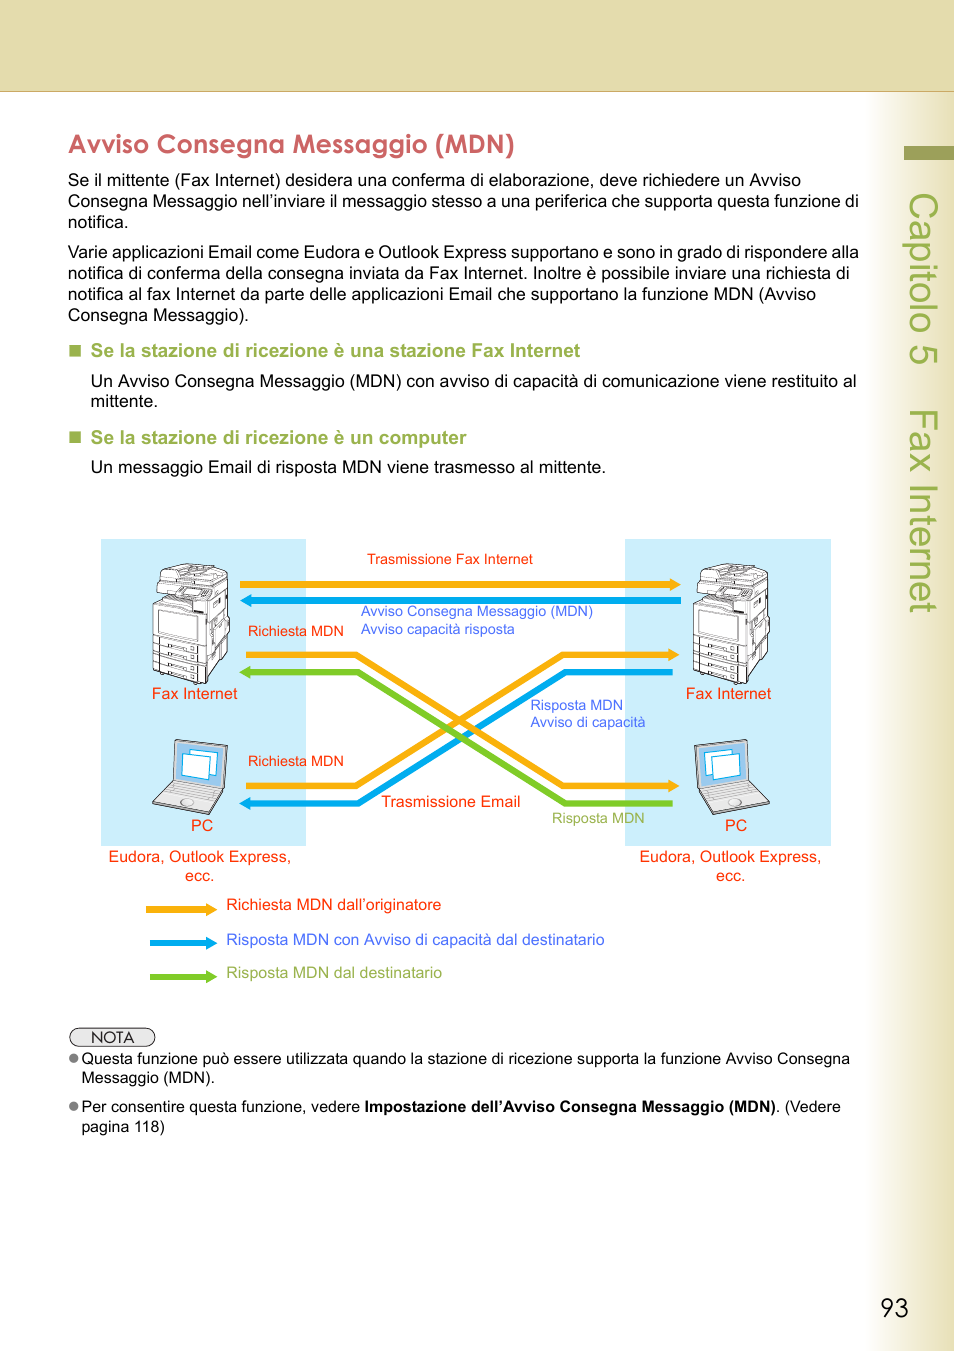 Avviso consegna messaggio (mdn), Capitolo 5 fax internet | Panasonic DPC322 Manuale d'uso | Pagina 93 / 218